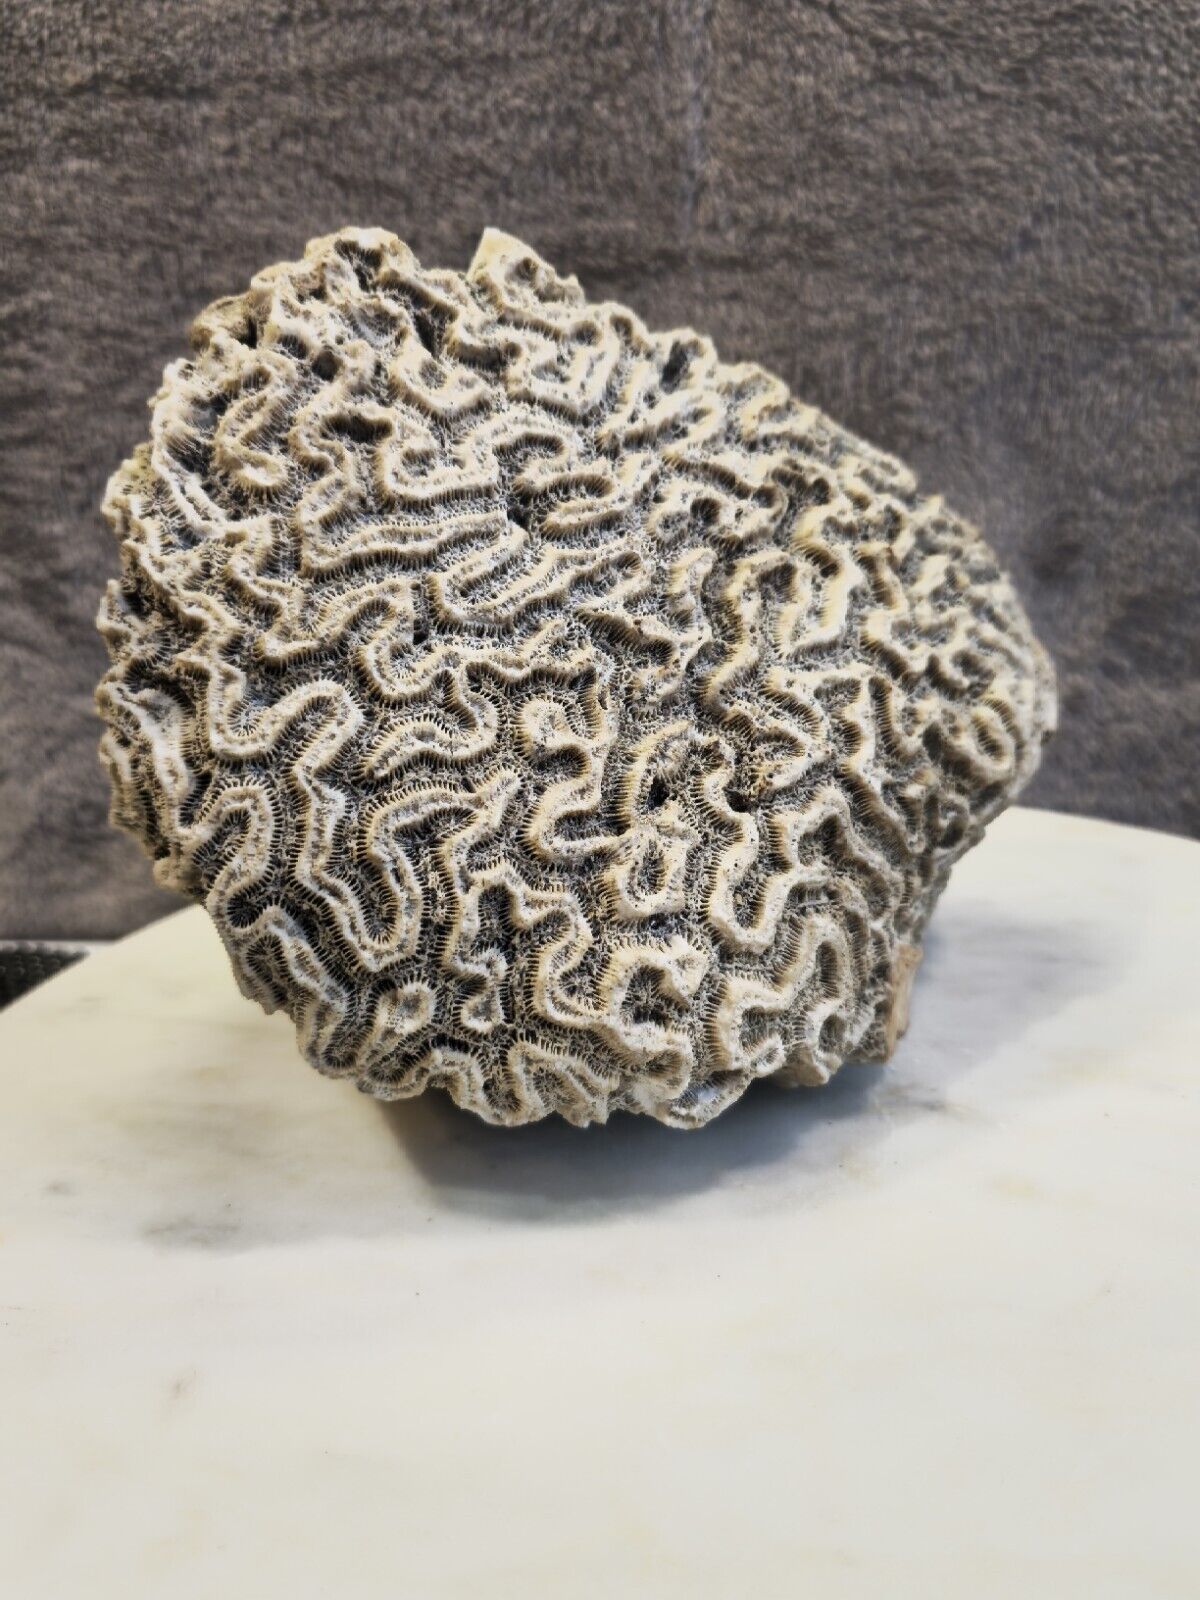 Natural Oval Shaped White Brain Coral Fossil 2+ lbs Beach Aquarium Sea Ocean